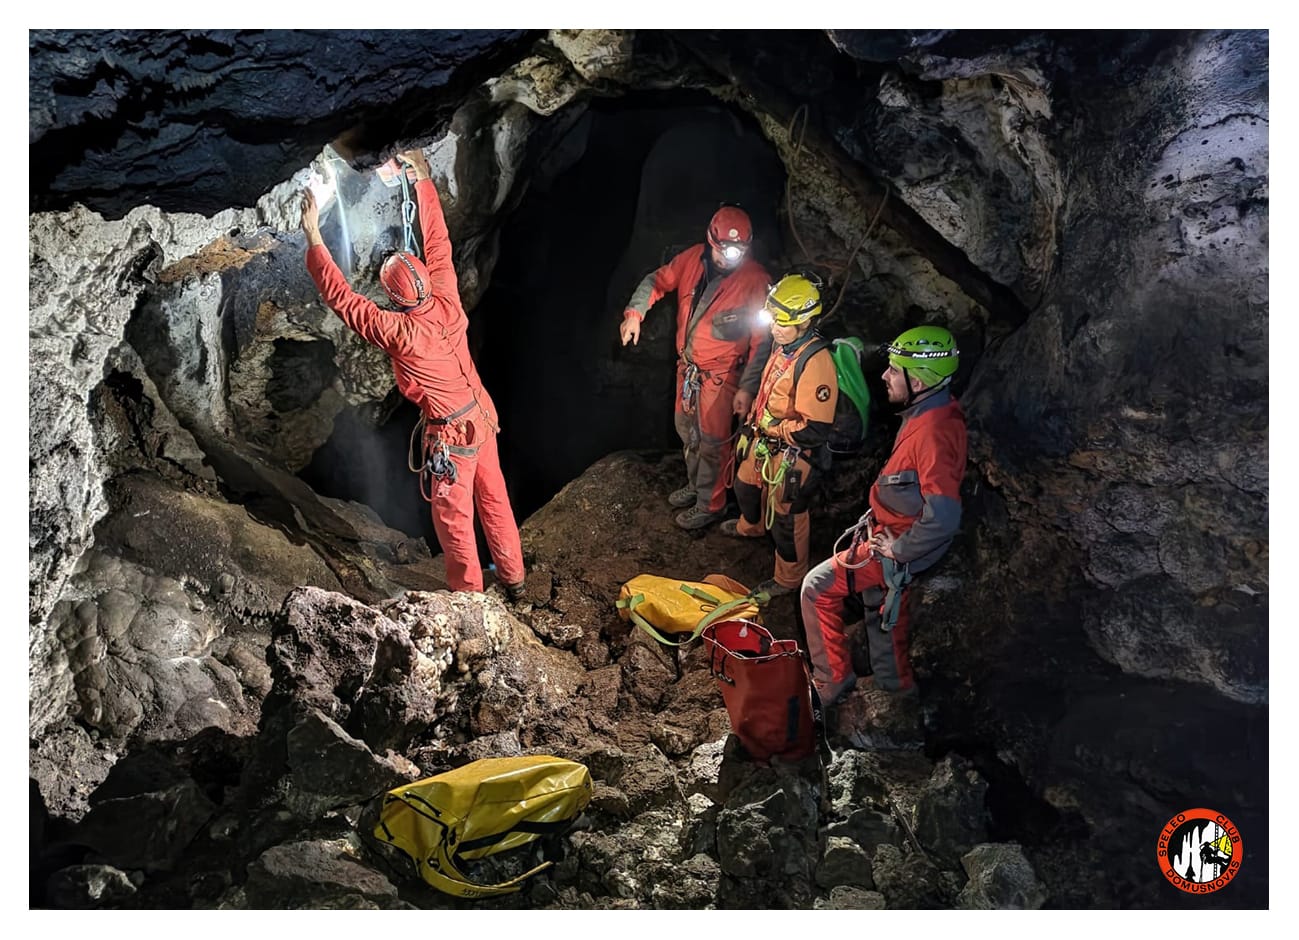 Domusnovas - Miniere & Grotte di Miniera – Mostra Fotografica